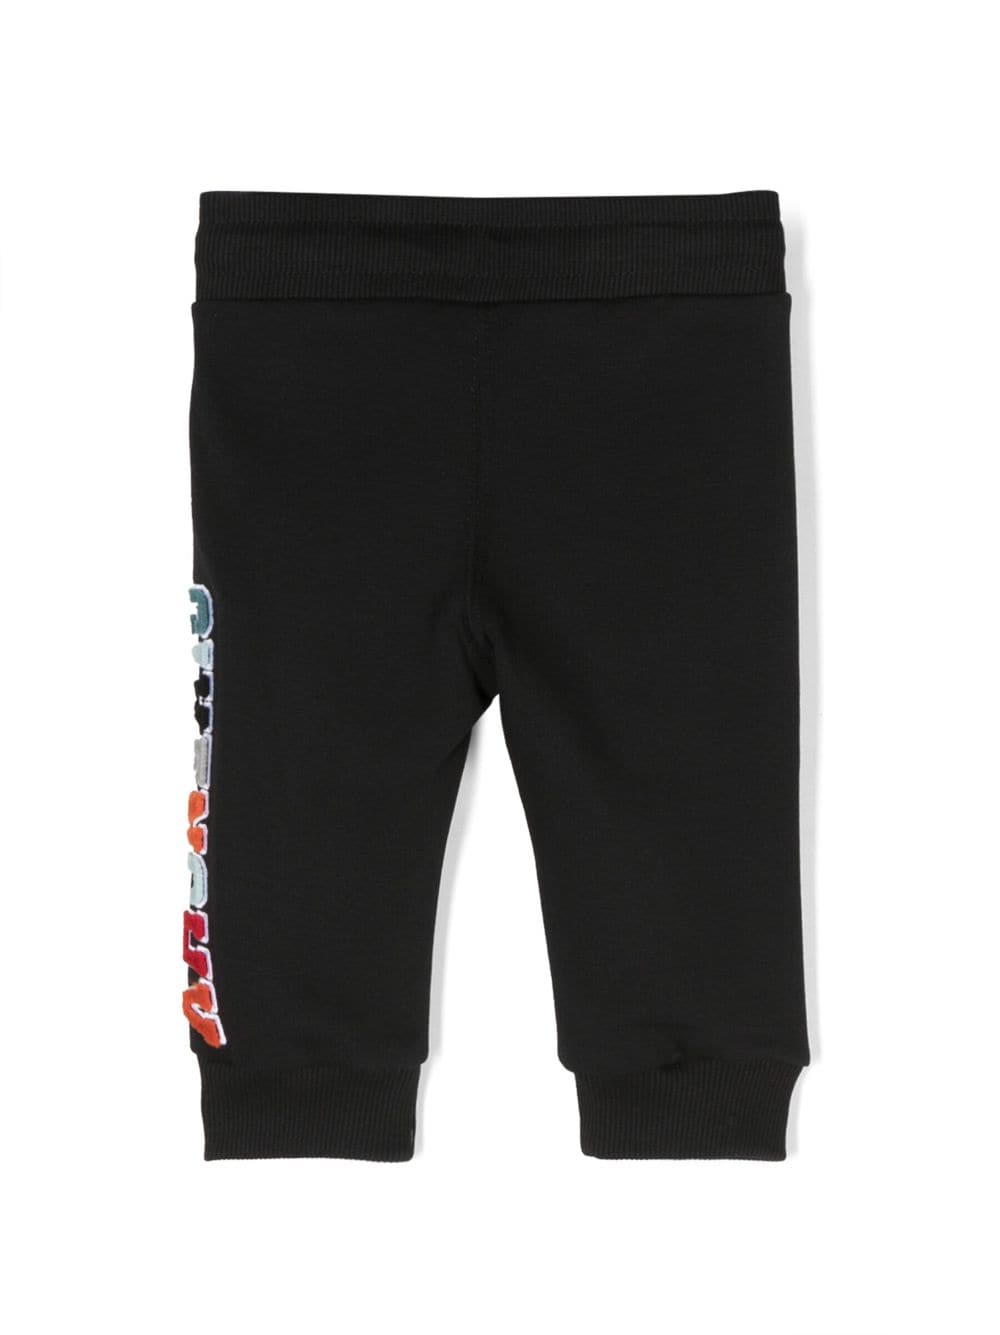 Pantaloni neonato neri con logo bianco